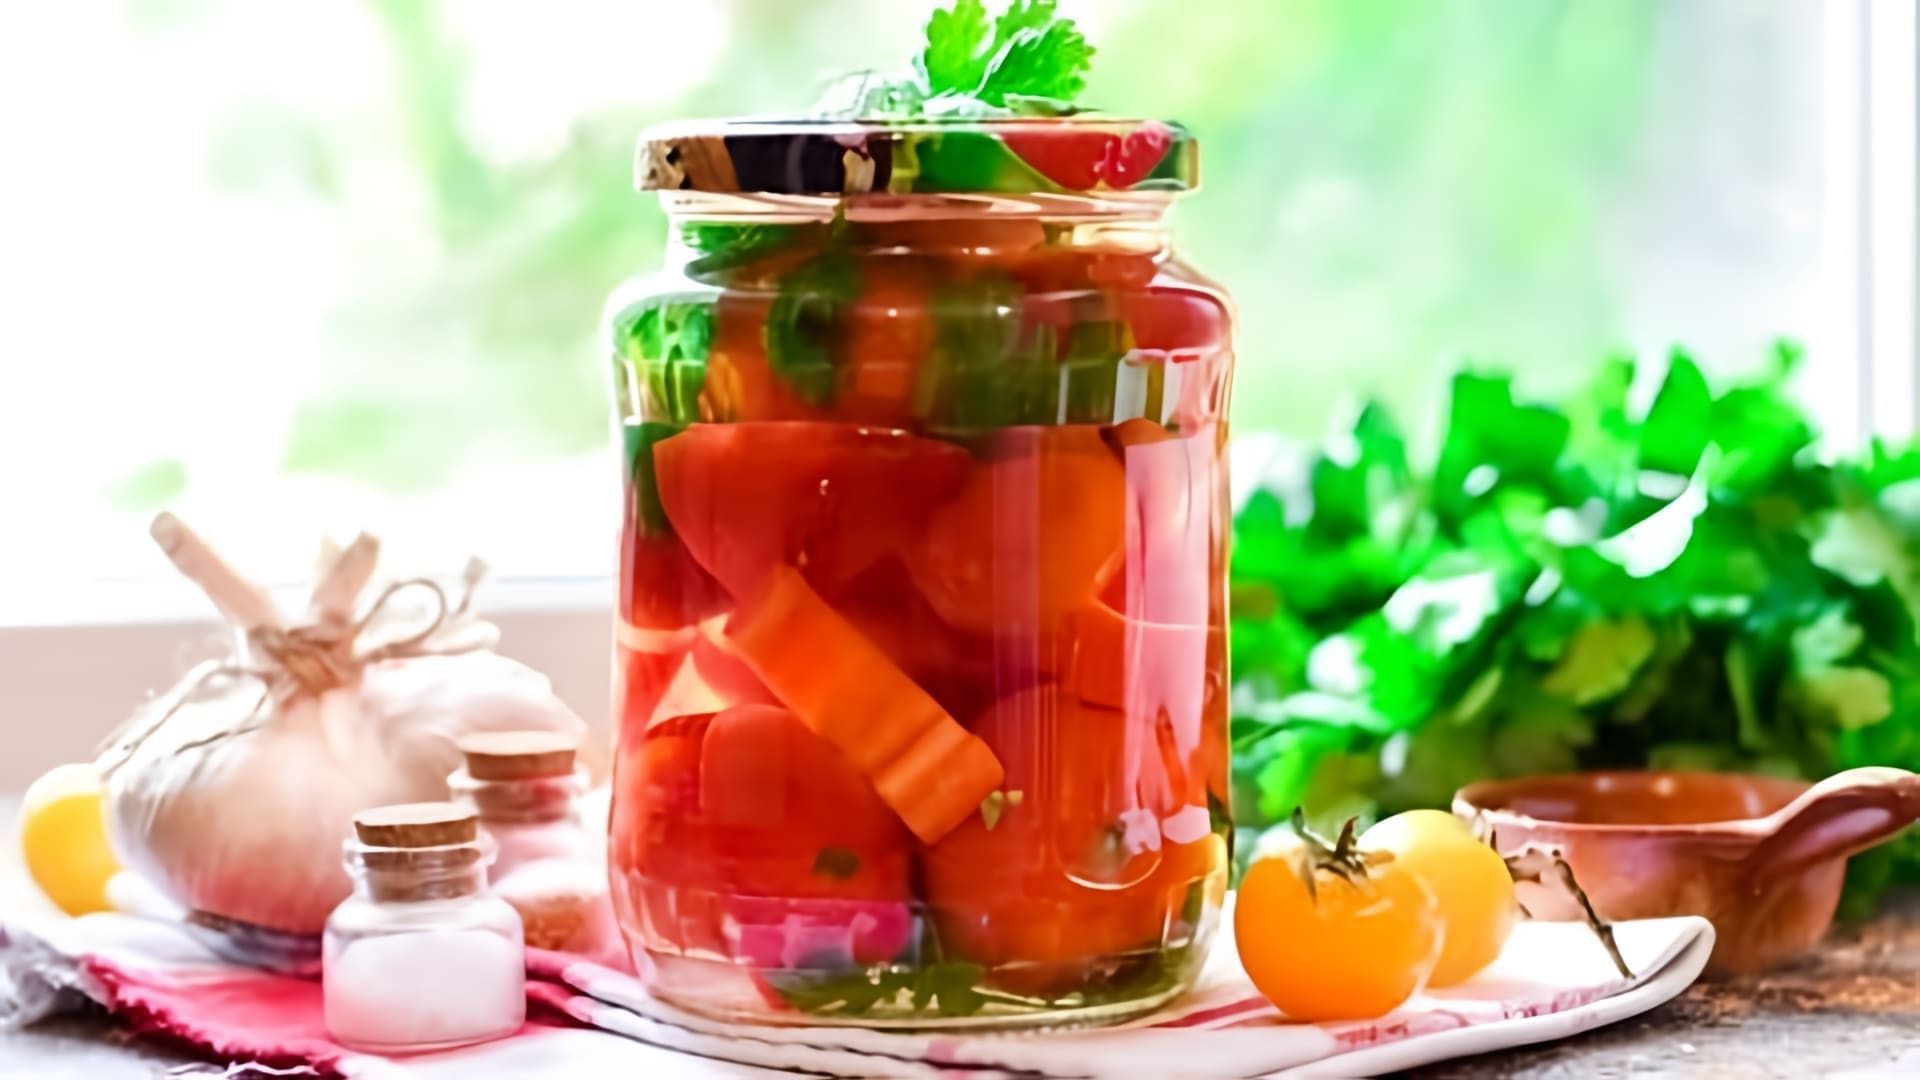 В этом видео демонстрируется процесс приготовления помидоров соленых с болгарским перцем